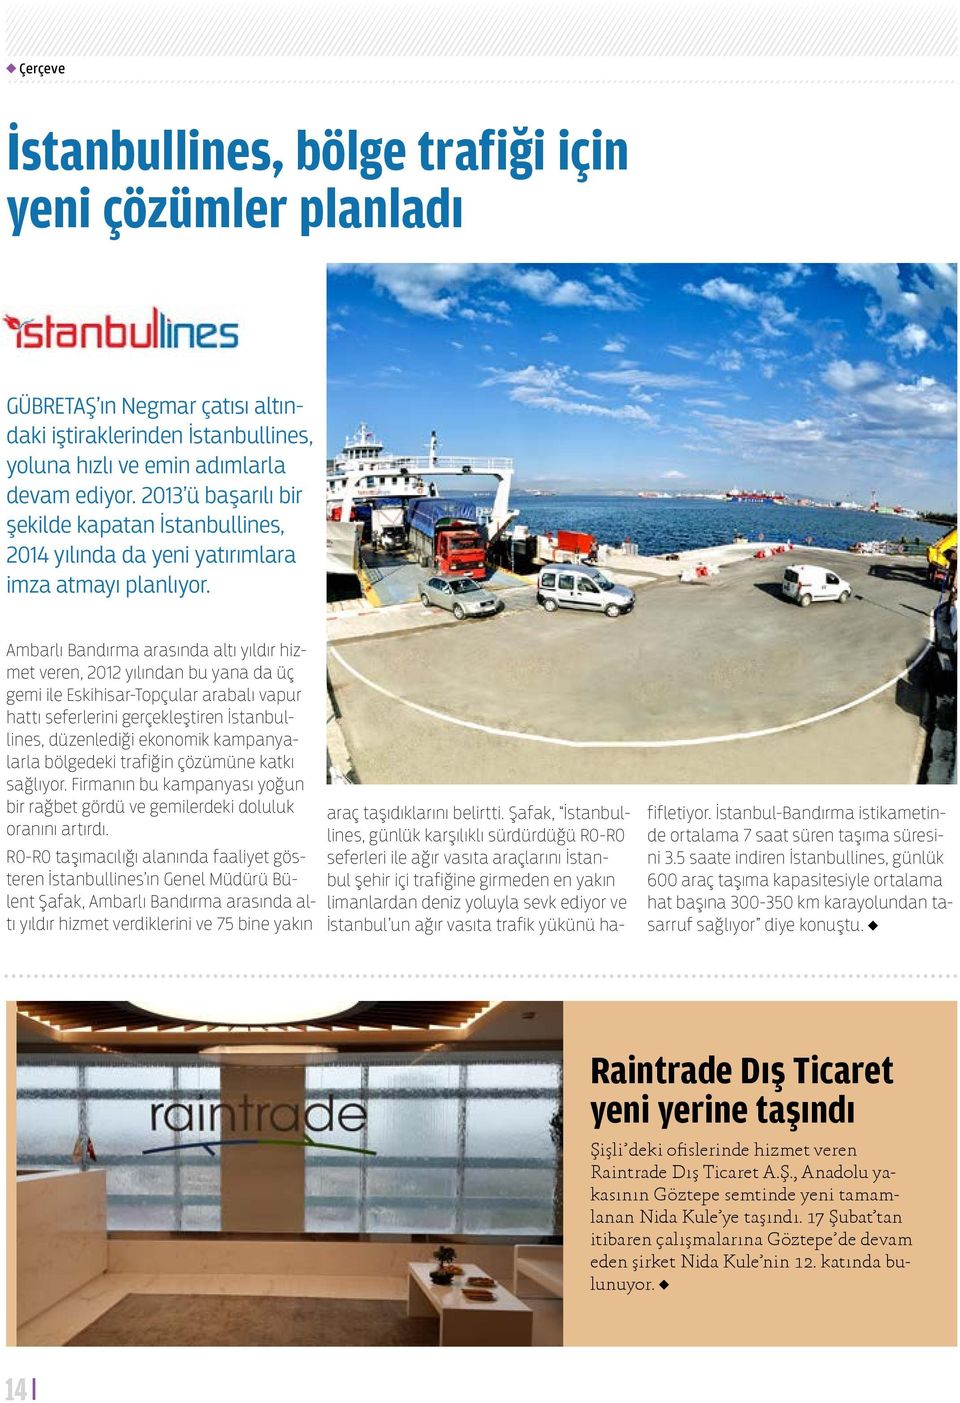 Ambarlı Bandırma arasında altı yıldır hizmet veren, 2012 yılından bu yana da üç gemi ile Eskihisar-Topçular arabalı vapur hattı seferlerini gerçekleştiren İstanbullines, düzenlediği ekonomik